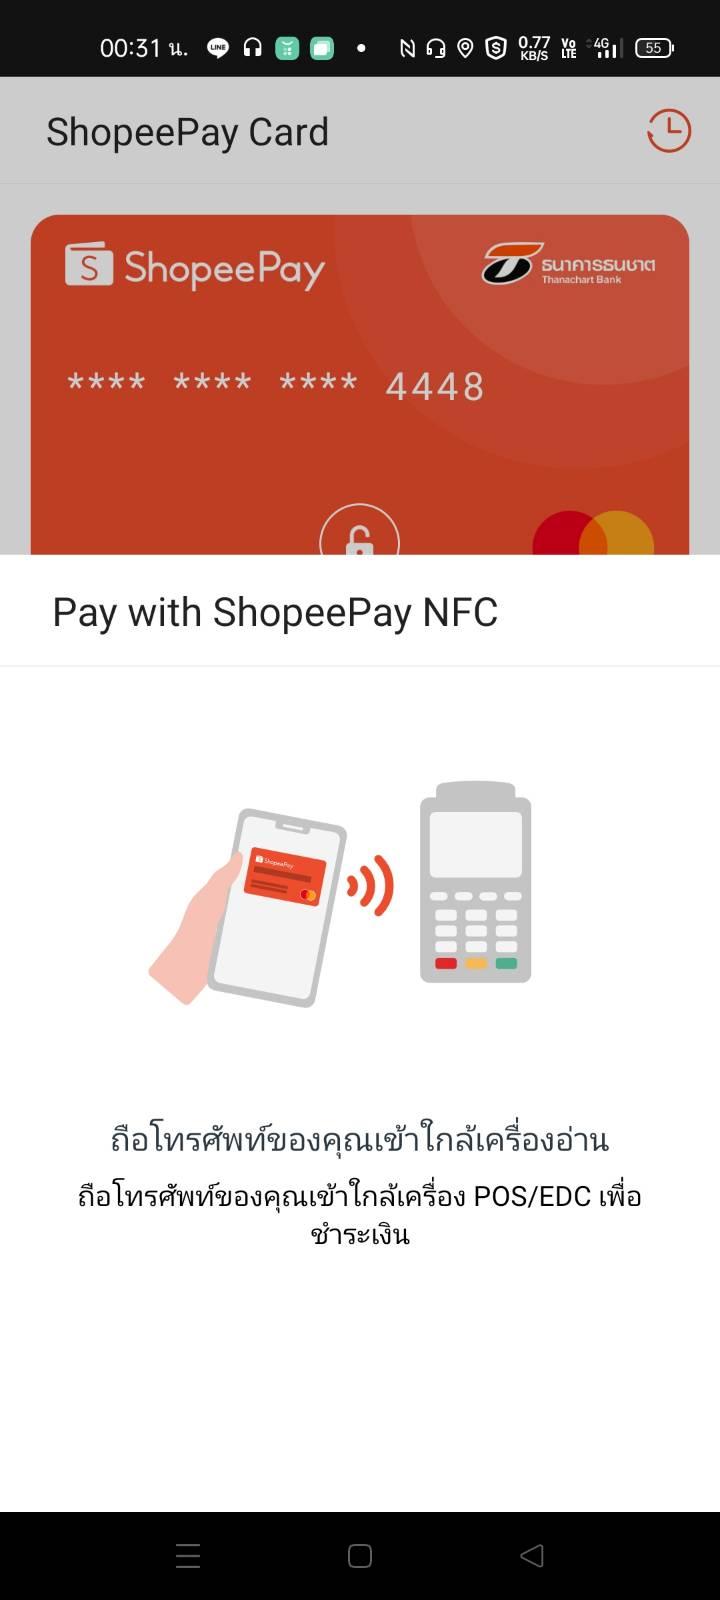 Shopee Pay Nfc กลับมาใช้ในเซเว่นตามปกติแล้วหรือยังครับ - Pantip